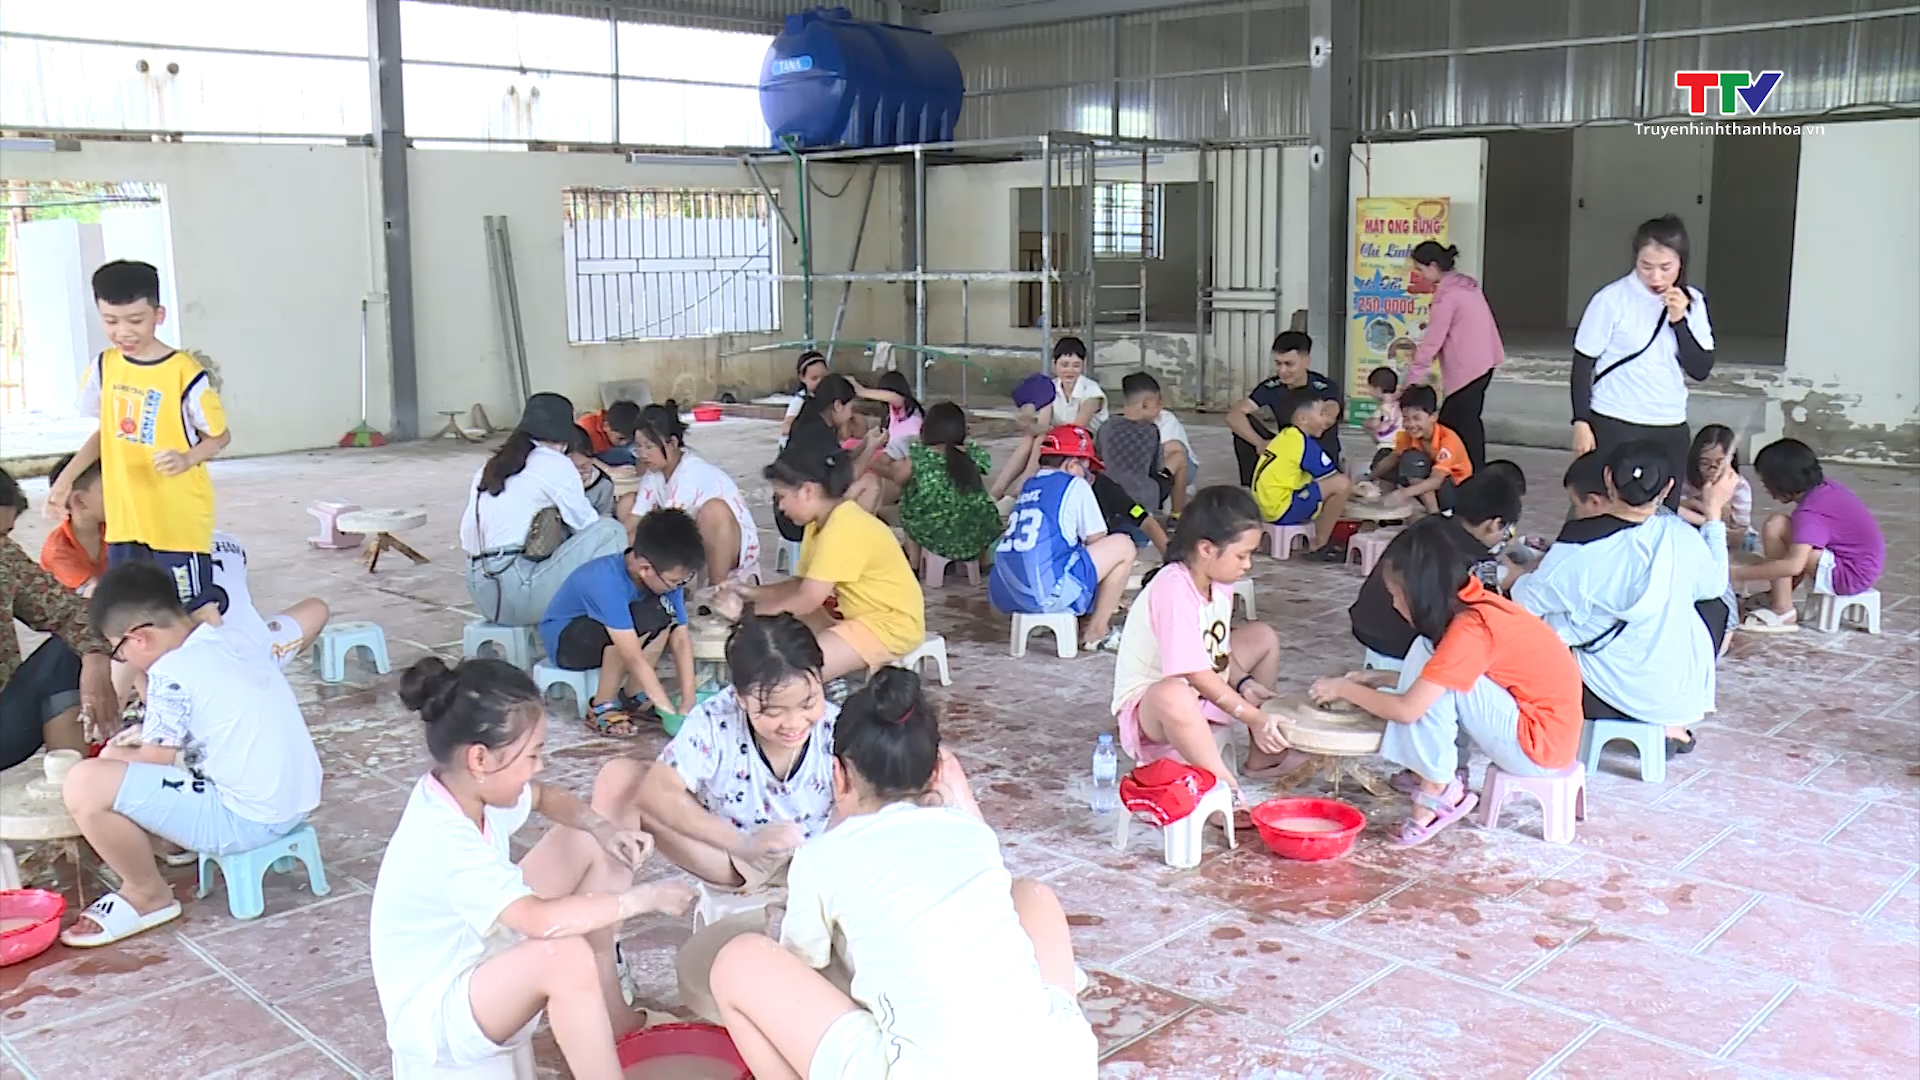 Sôi động sân chơi cho thiếu nhi thành phố Thanh Hoá trong dịp hè- Ảnh 2.